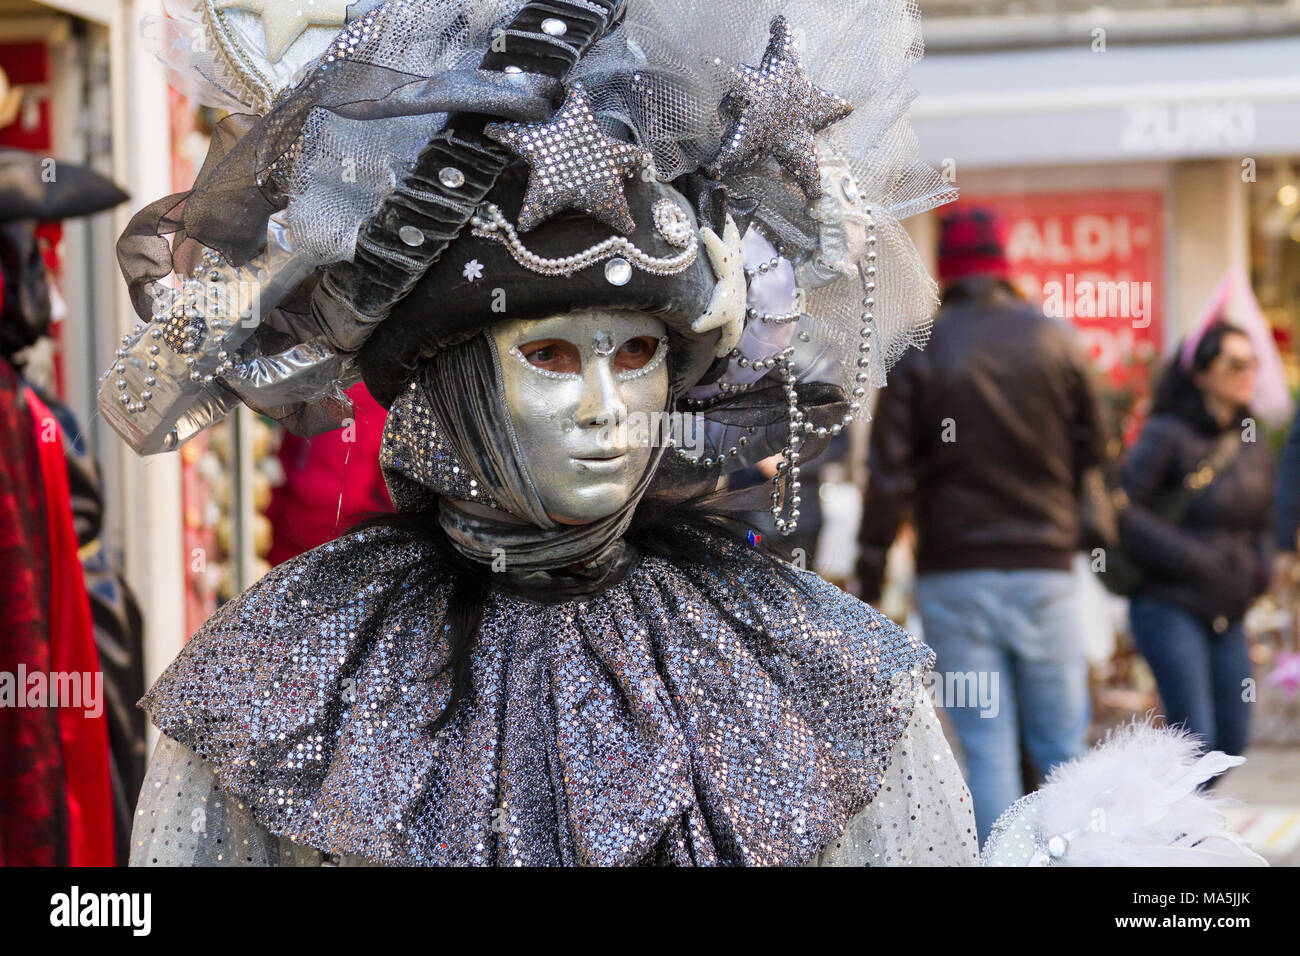 Venezia (Venise), Italie. 2 février 2018. Une personne en masque sur le carnaval de Venise. Banque D'Images